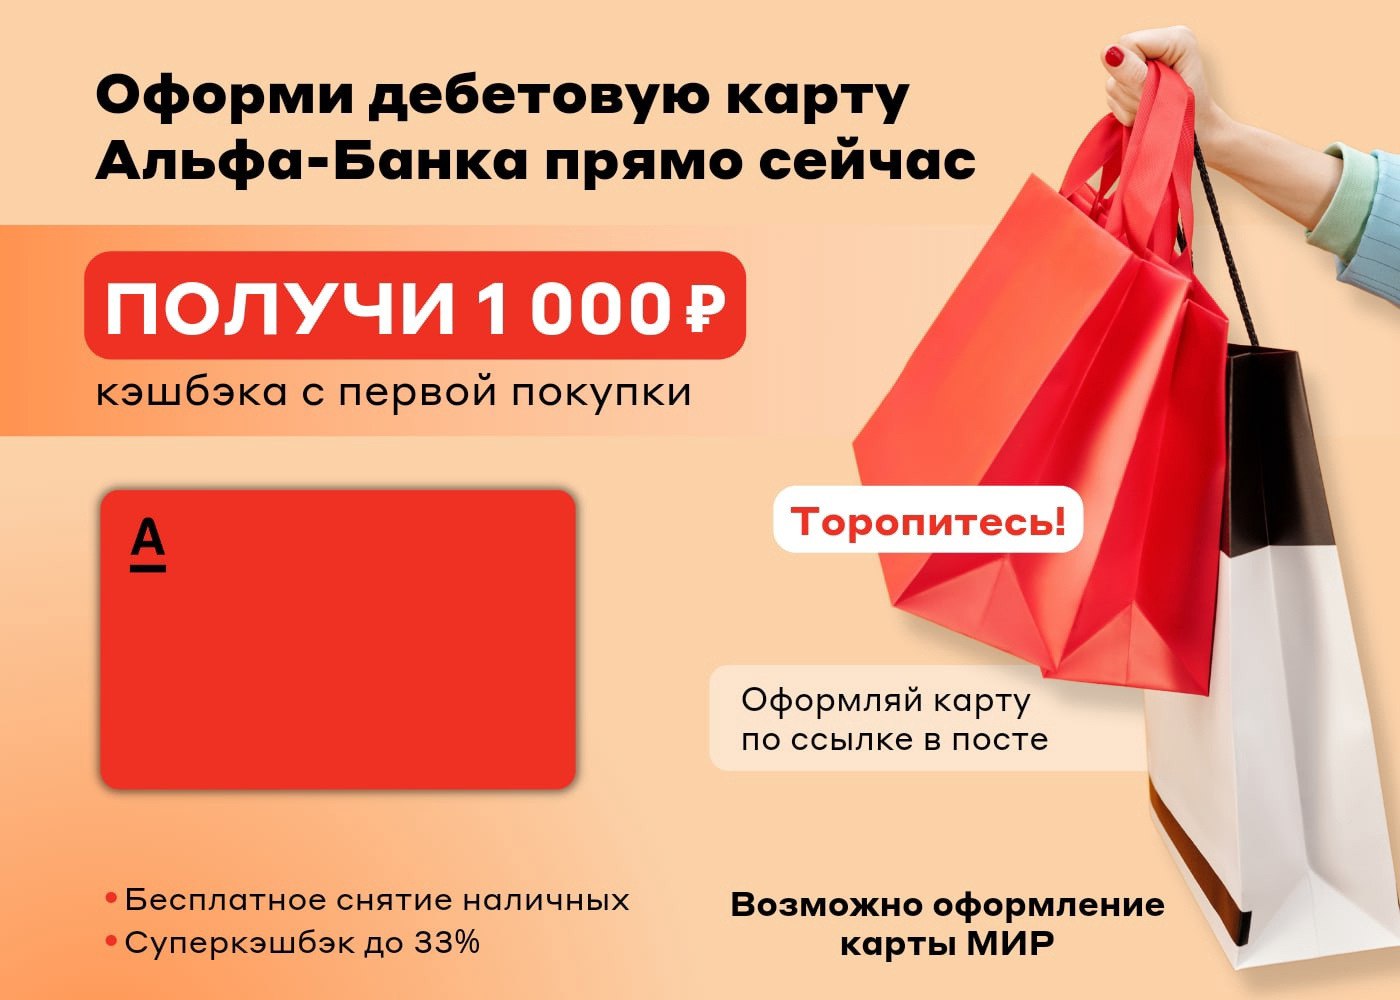 Альфа банк 1000 рублей